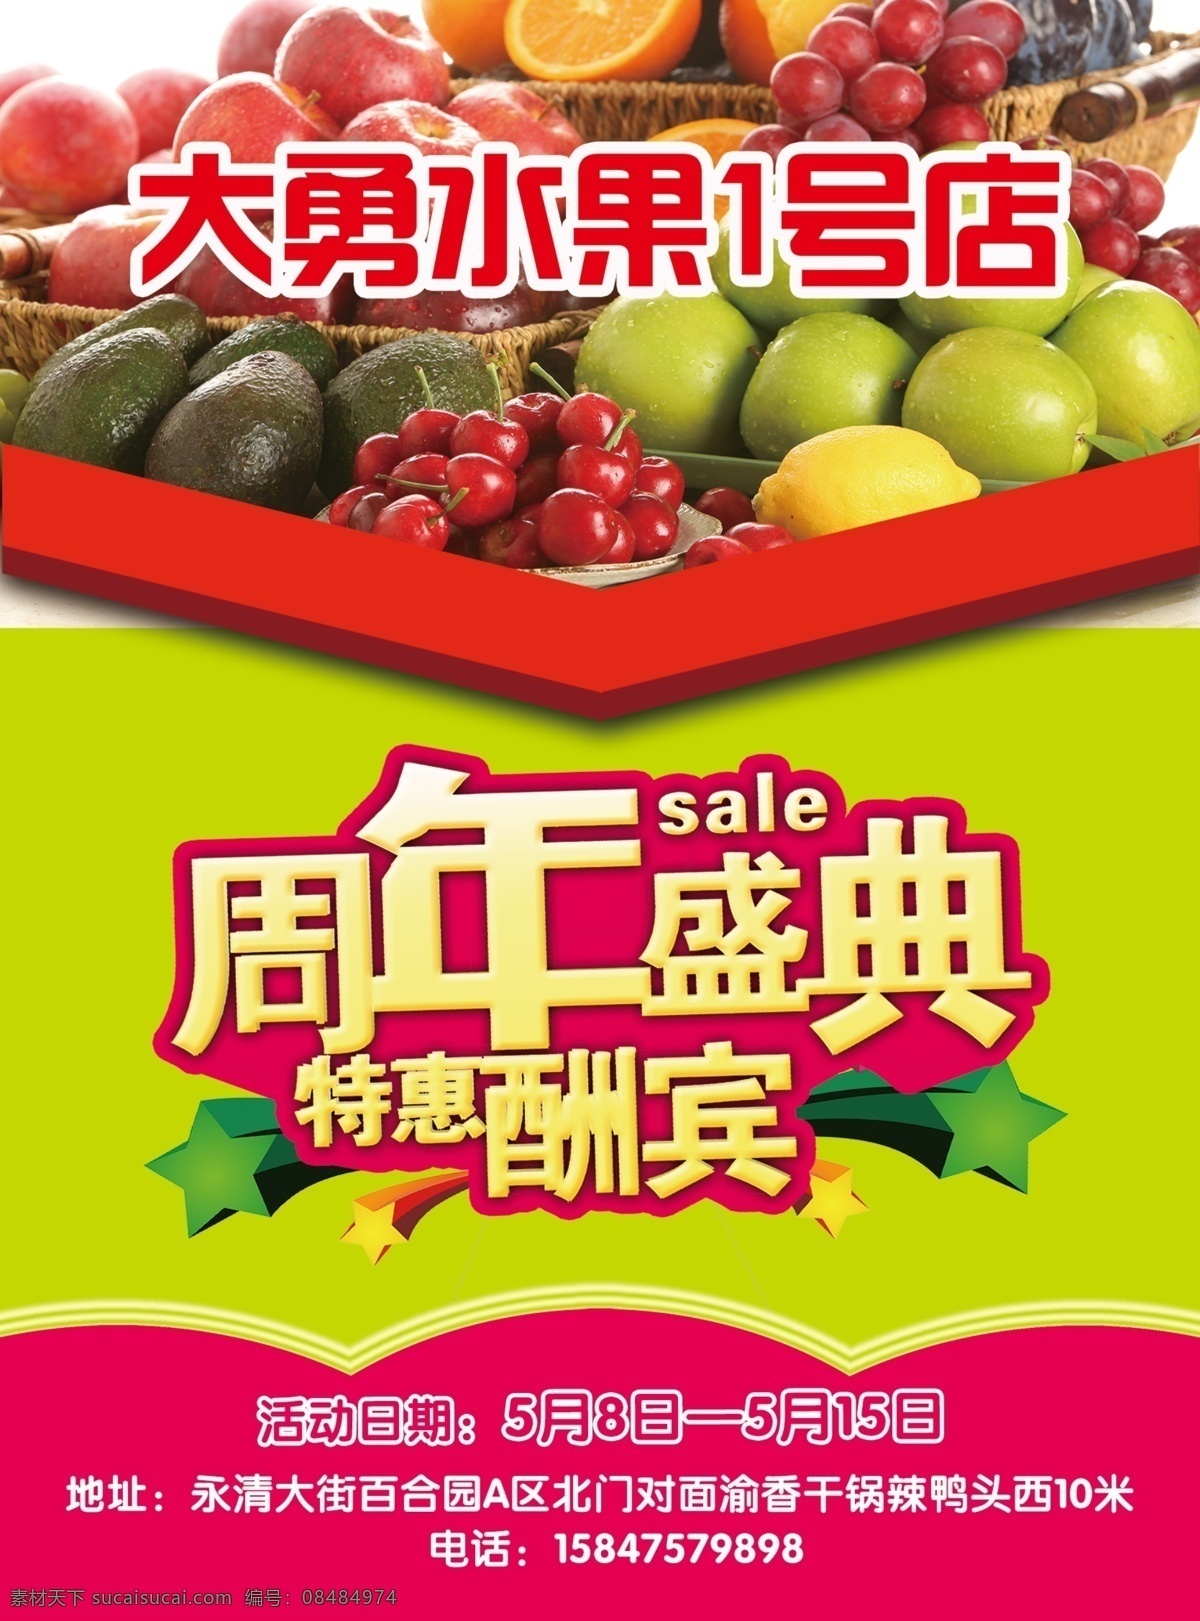 水果店海报 折页 宣传 dm单 活动 海报